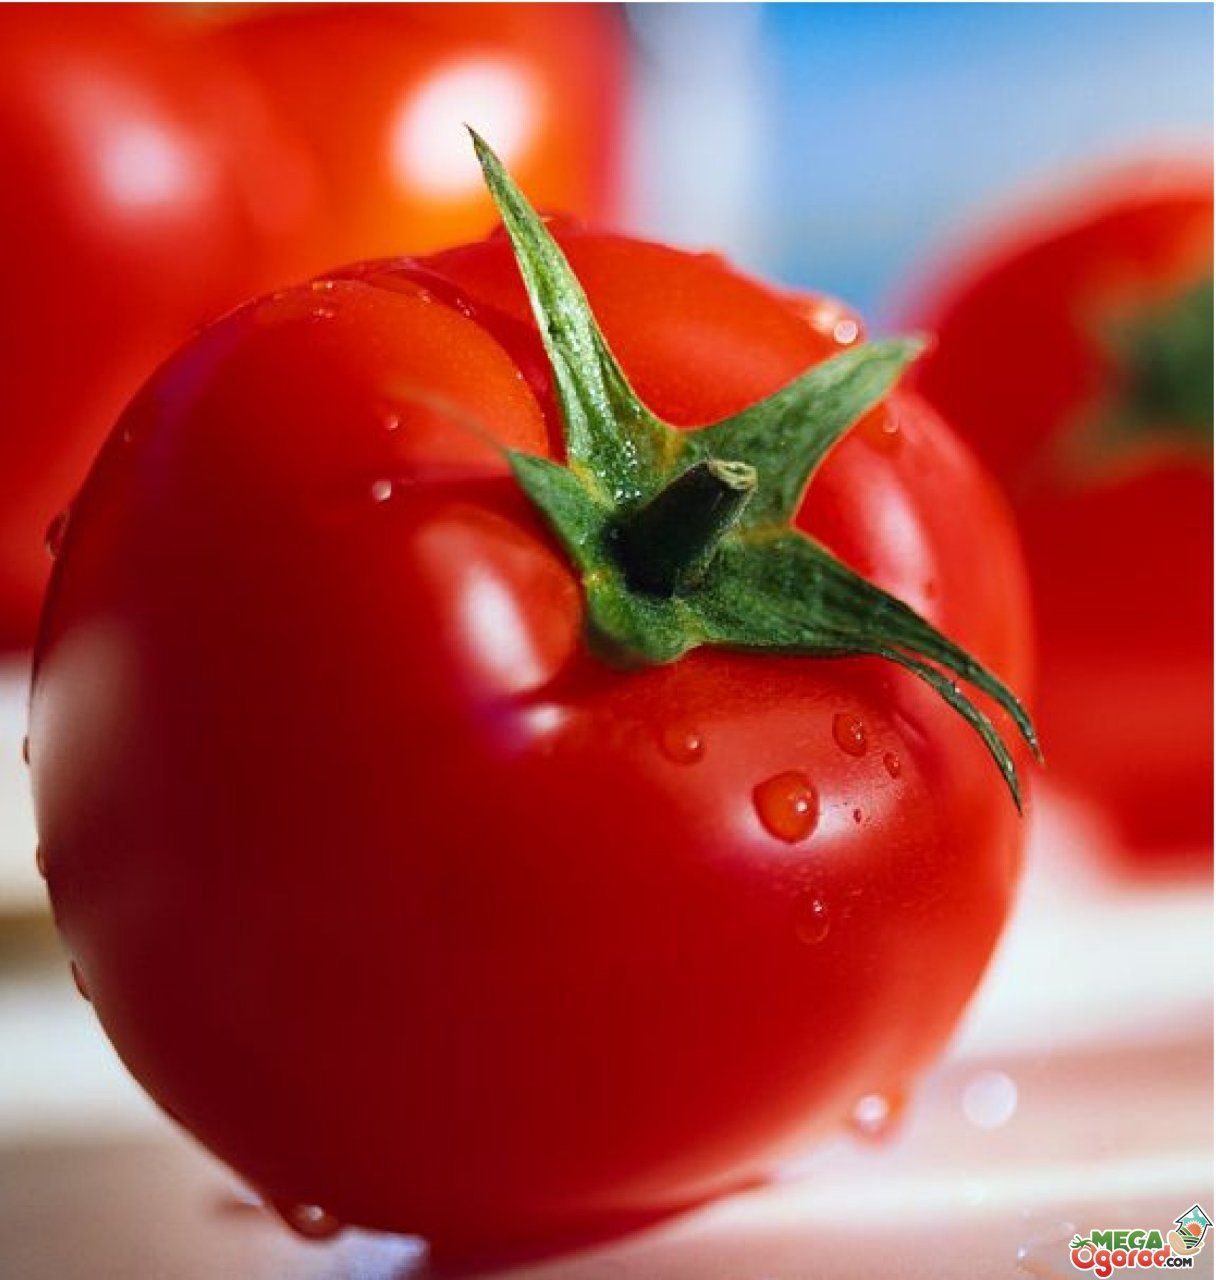 Описание и характеристика сортов томатов устойчивых к фитофторе